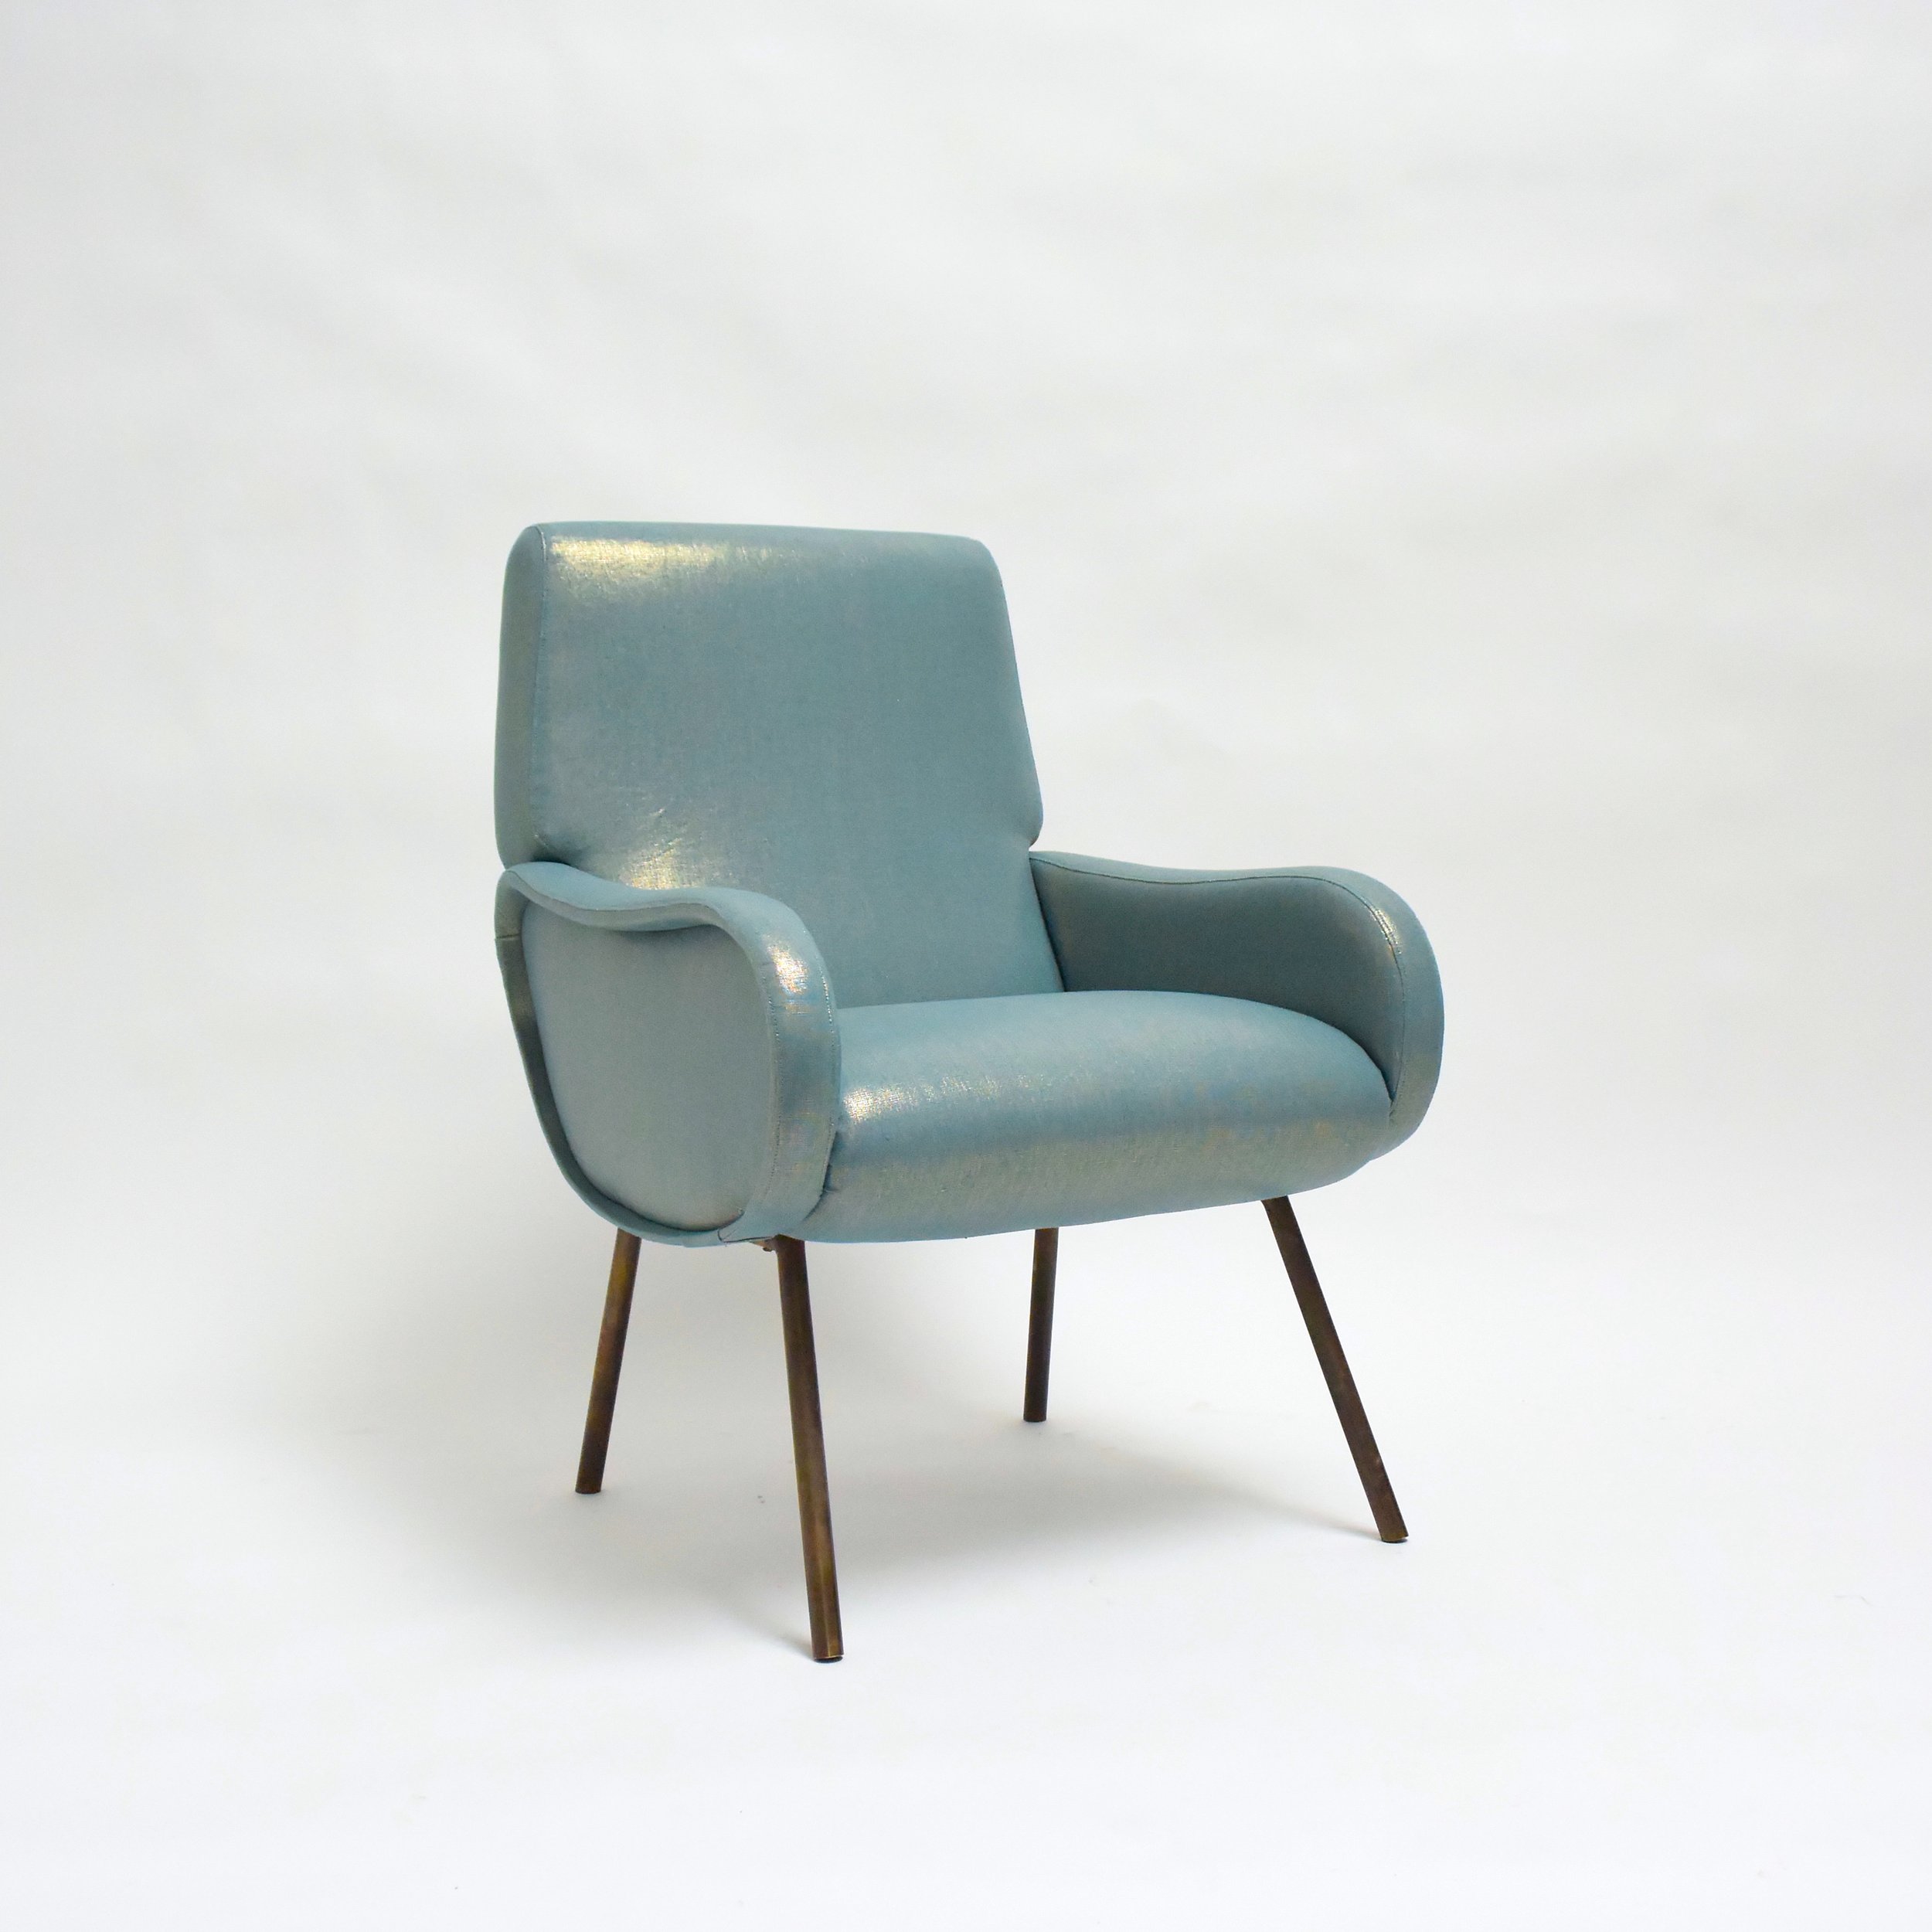 A-Blue-Chair-1.JPG